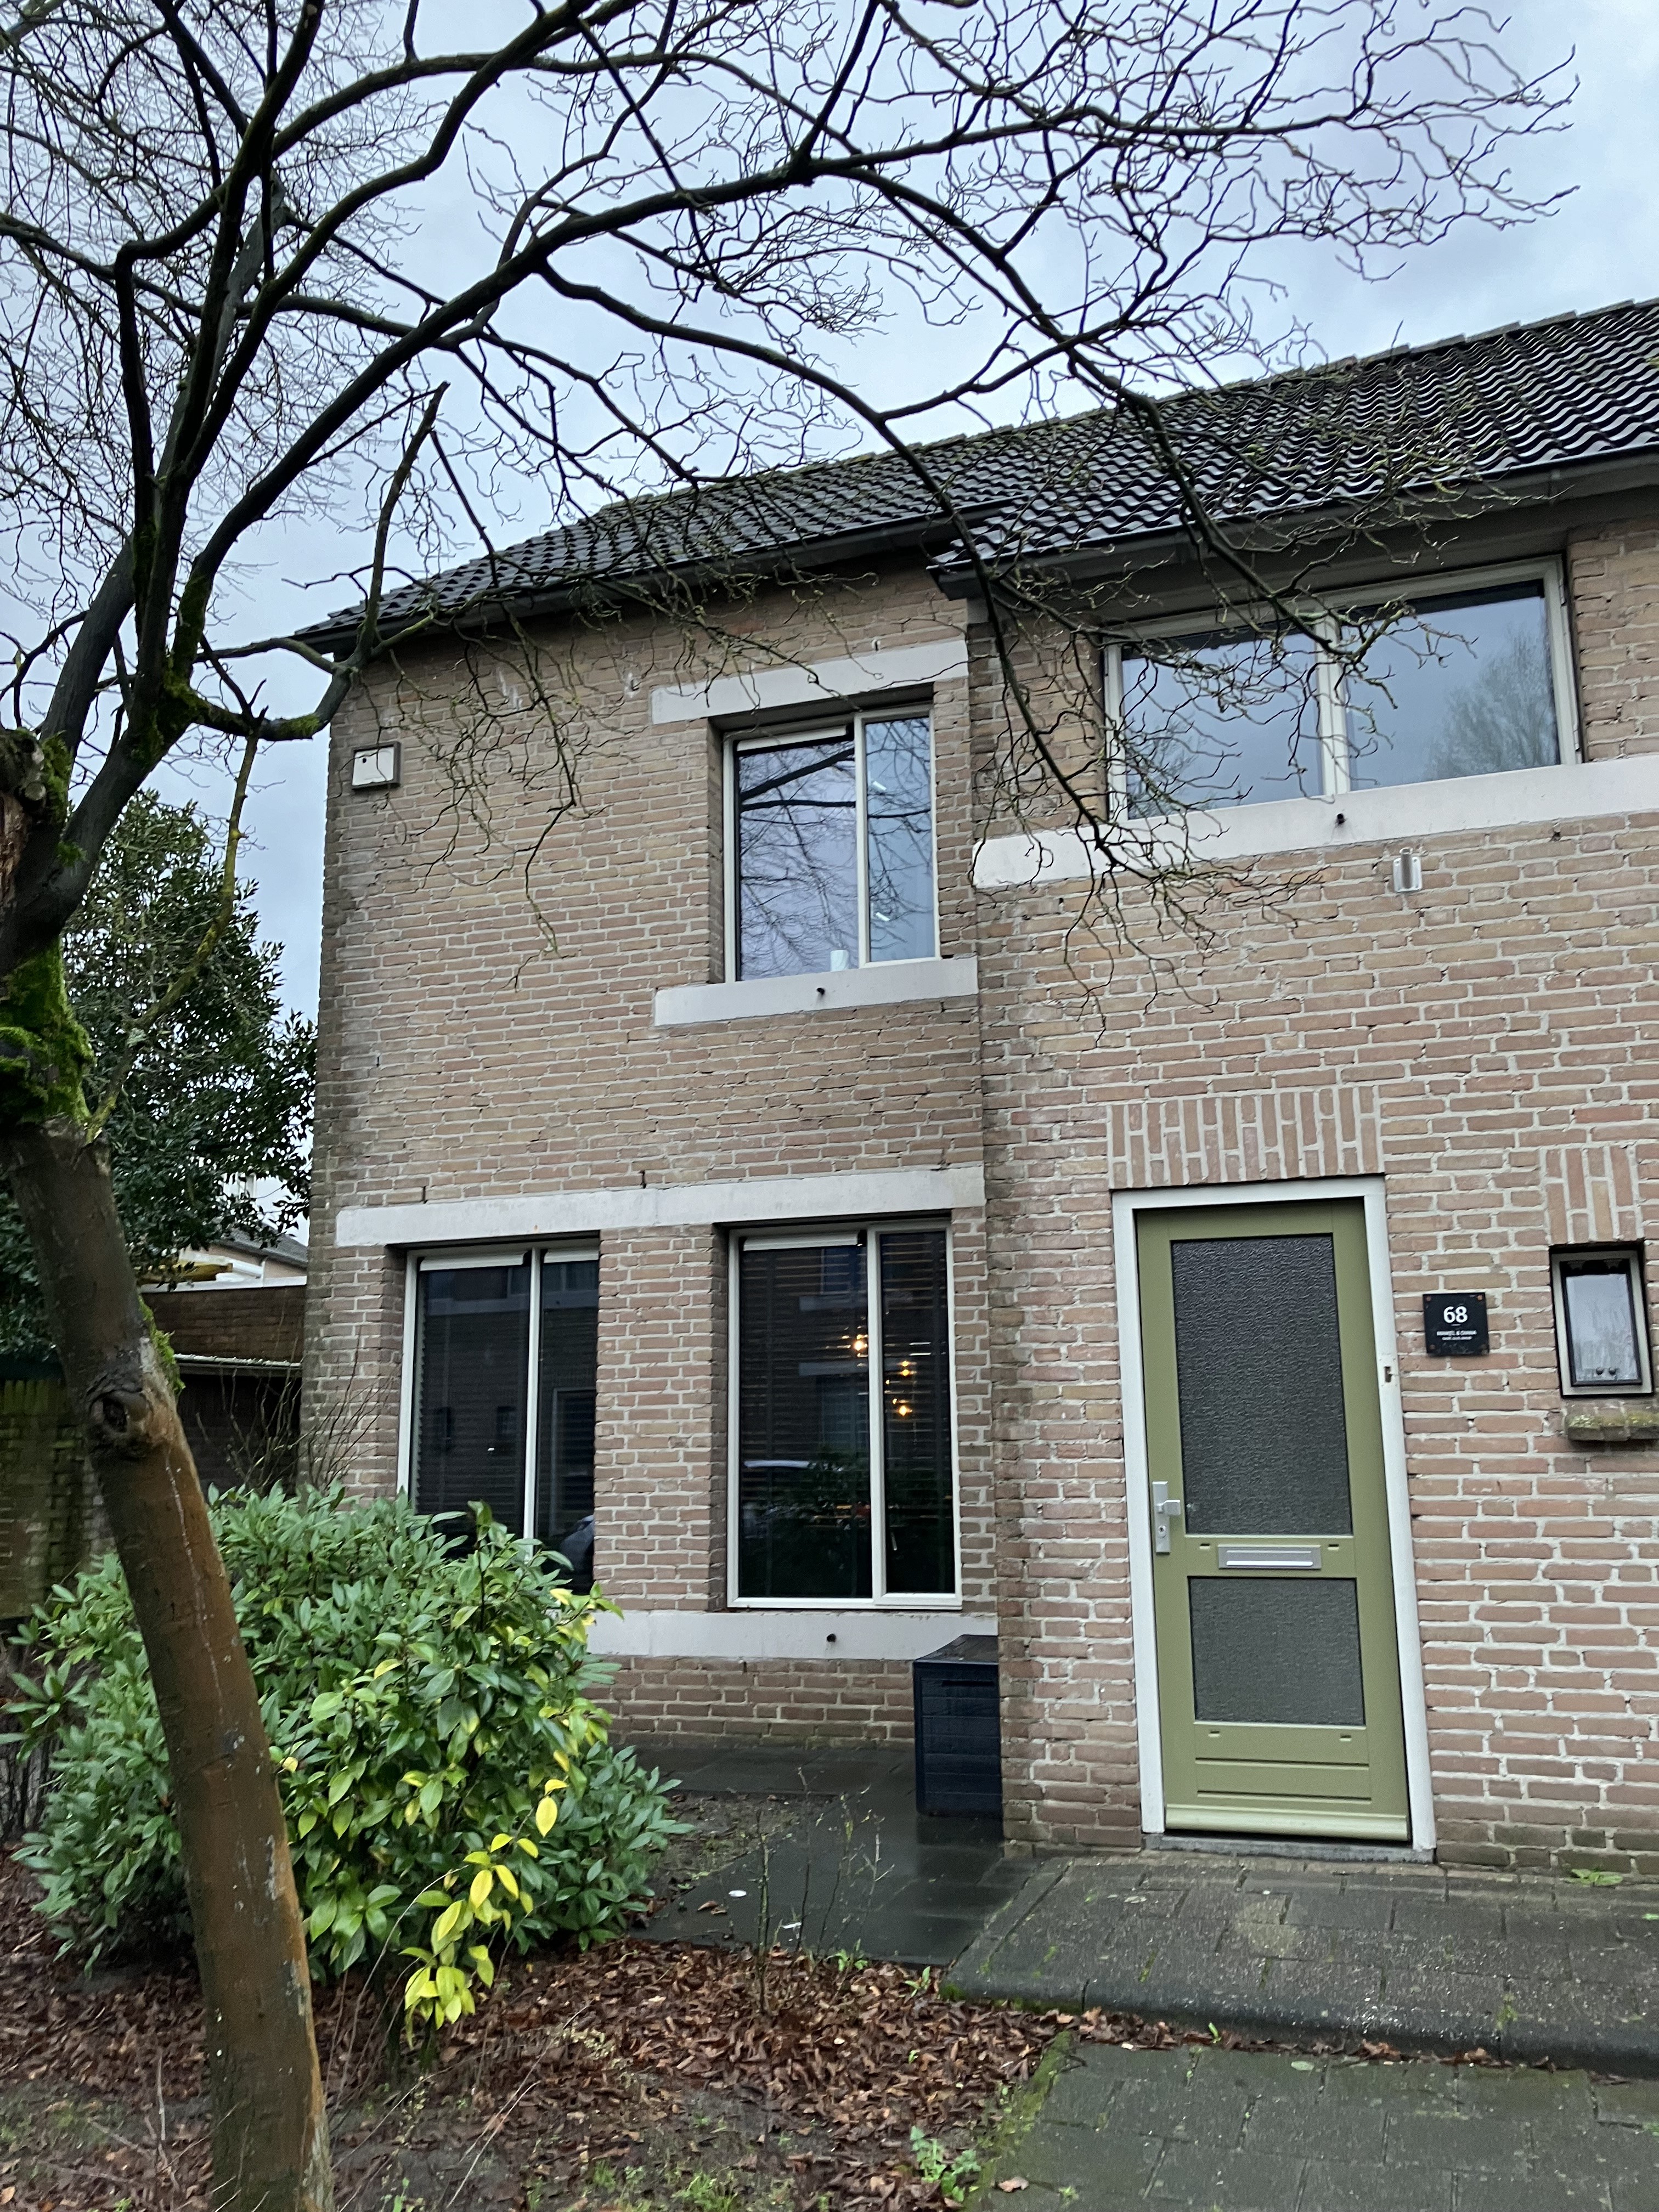 Prunusstraat 68, 5061 AV Oisterwijk, Nederland